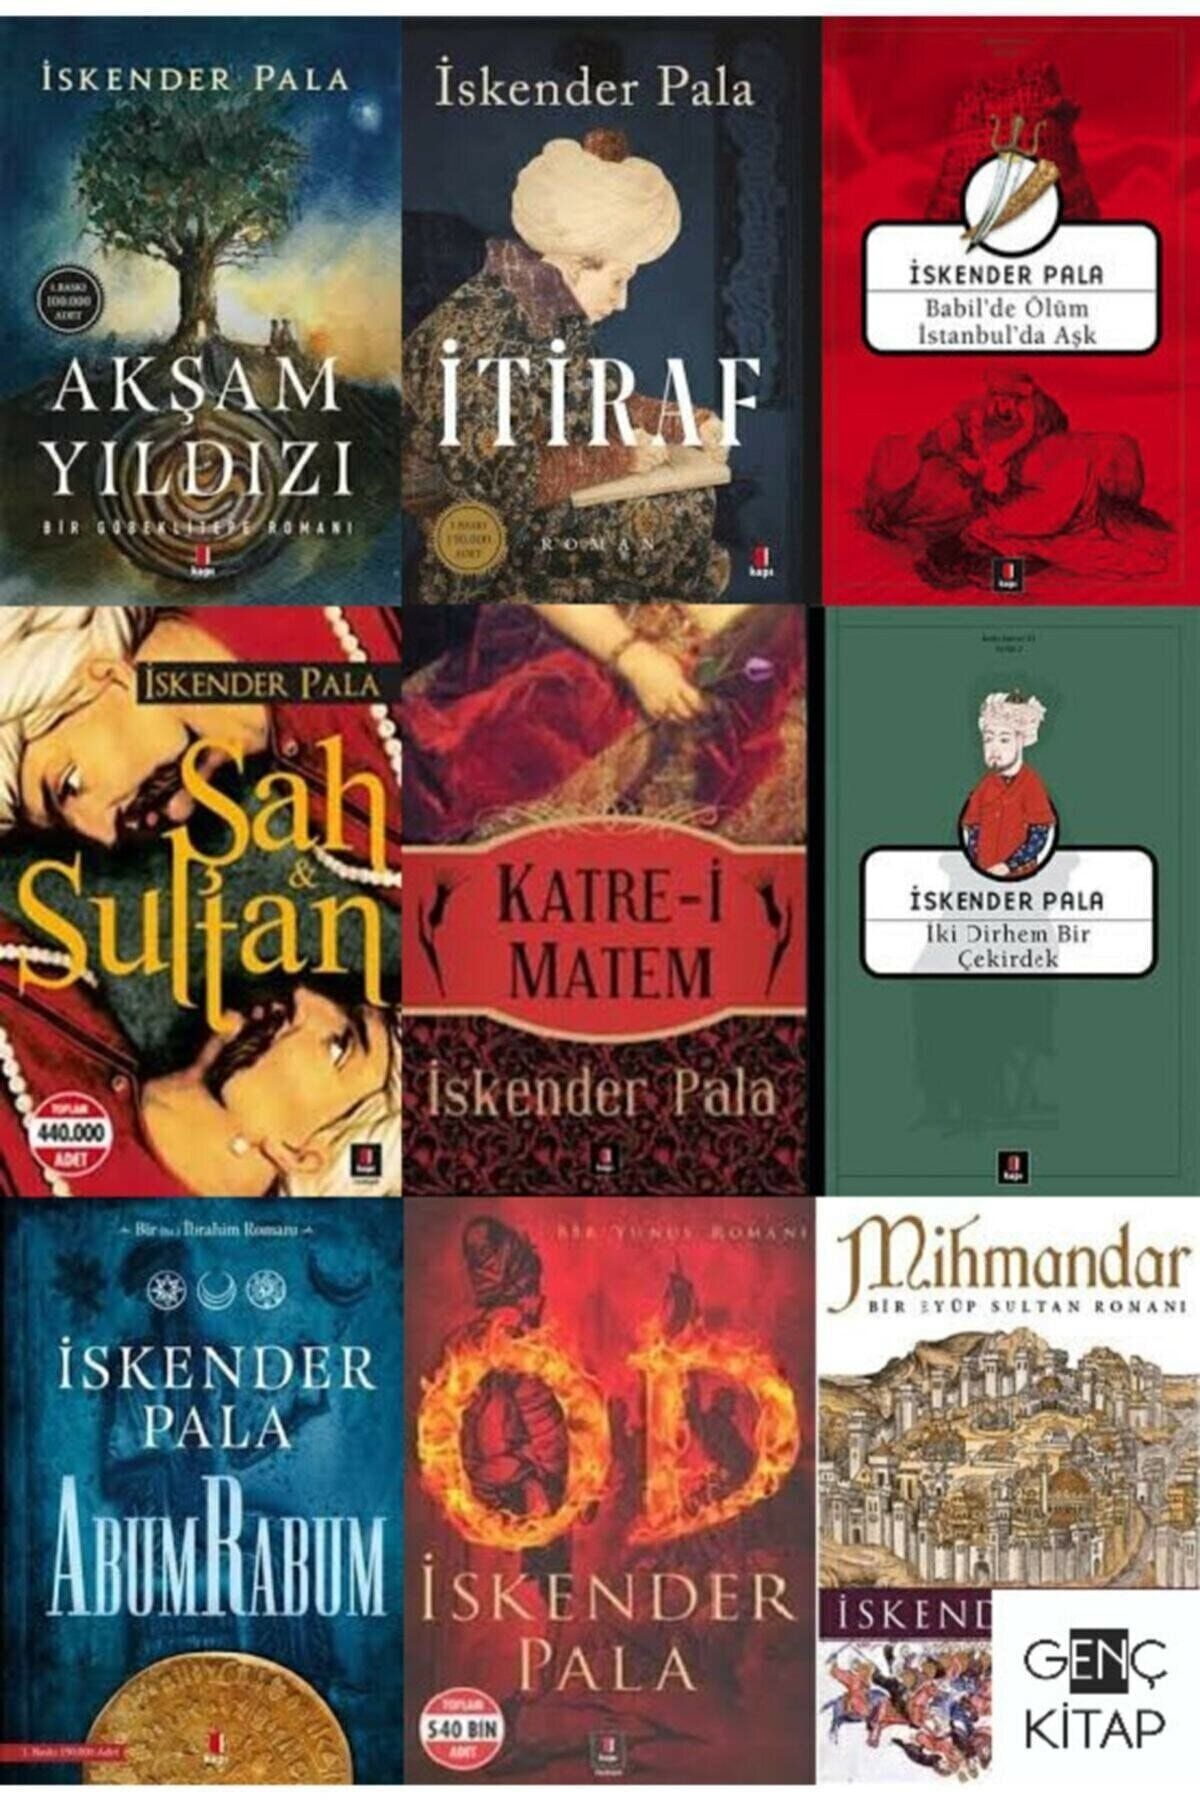 Türk Dil Kurumu Iskender Pala 9 Kitap Set / Akşam Yıldızı - Itiraf - Babil'de Ölüm Istanbul'da Aşk - Od - Mihmandar